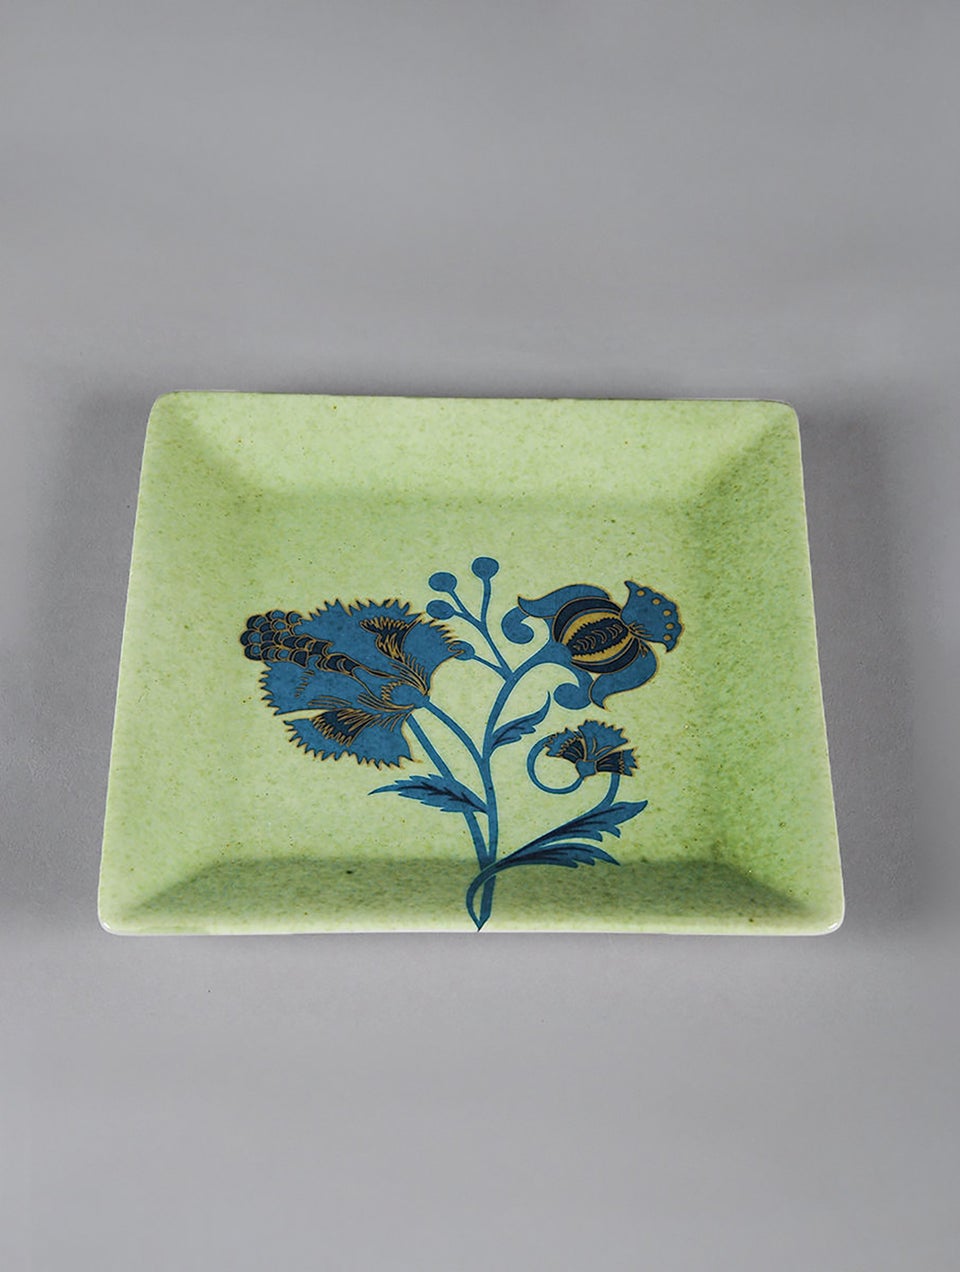 Artic Green Floral Quarter Plates